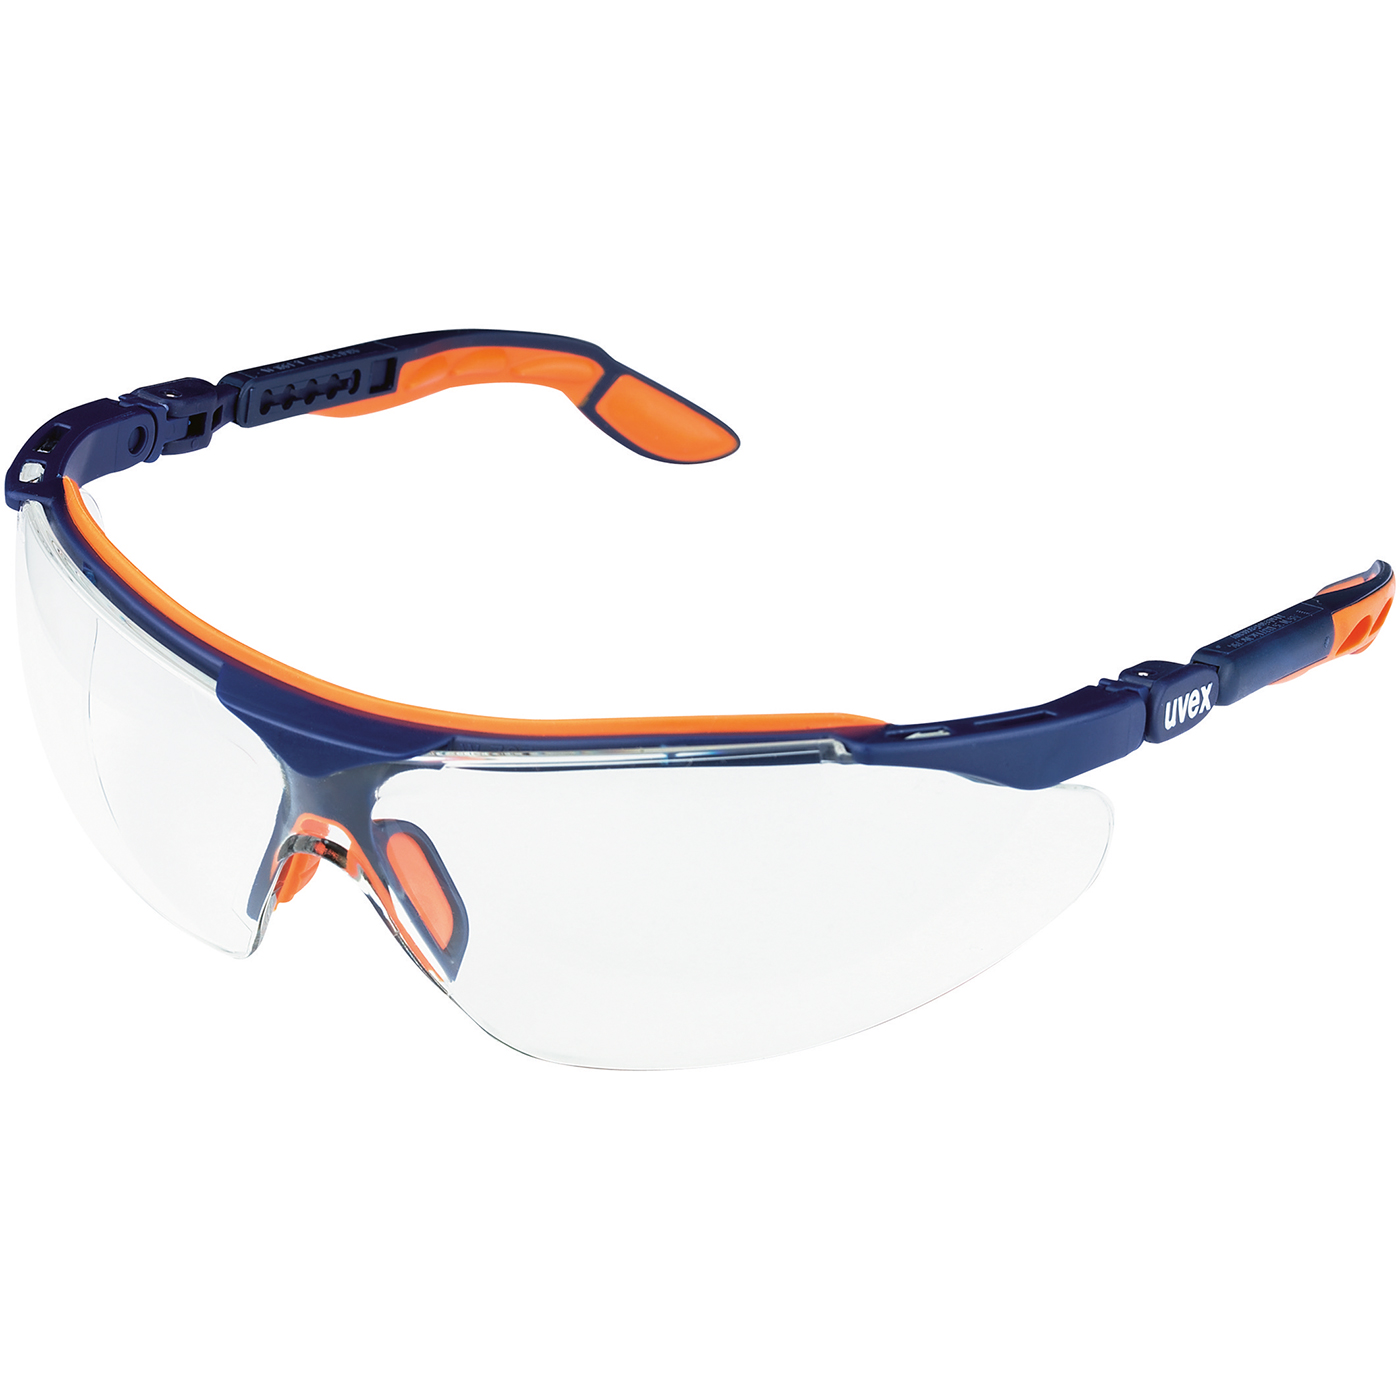 uvex iSpec Comfort Fit Schutzbrille,Scheibe farblos,F.blau/orange - 1 Stück